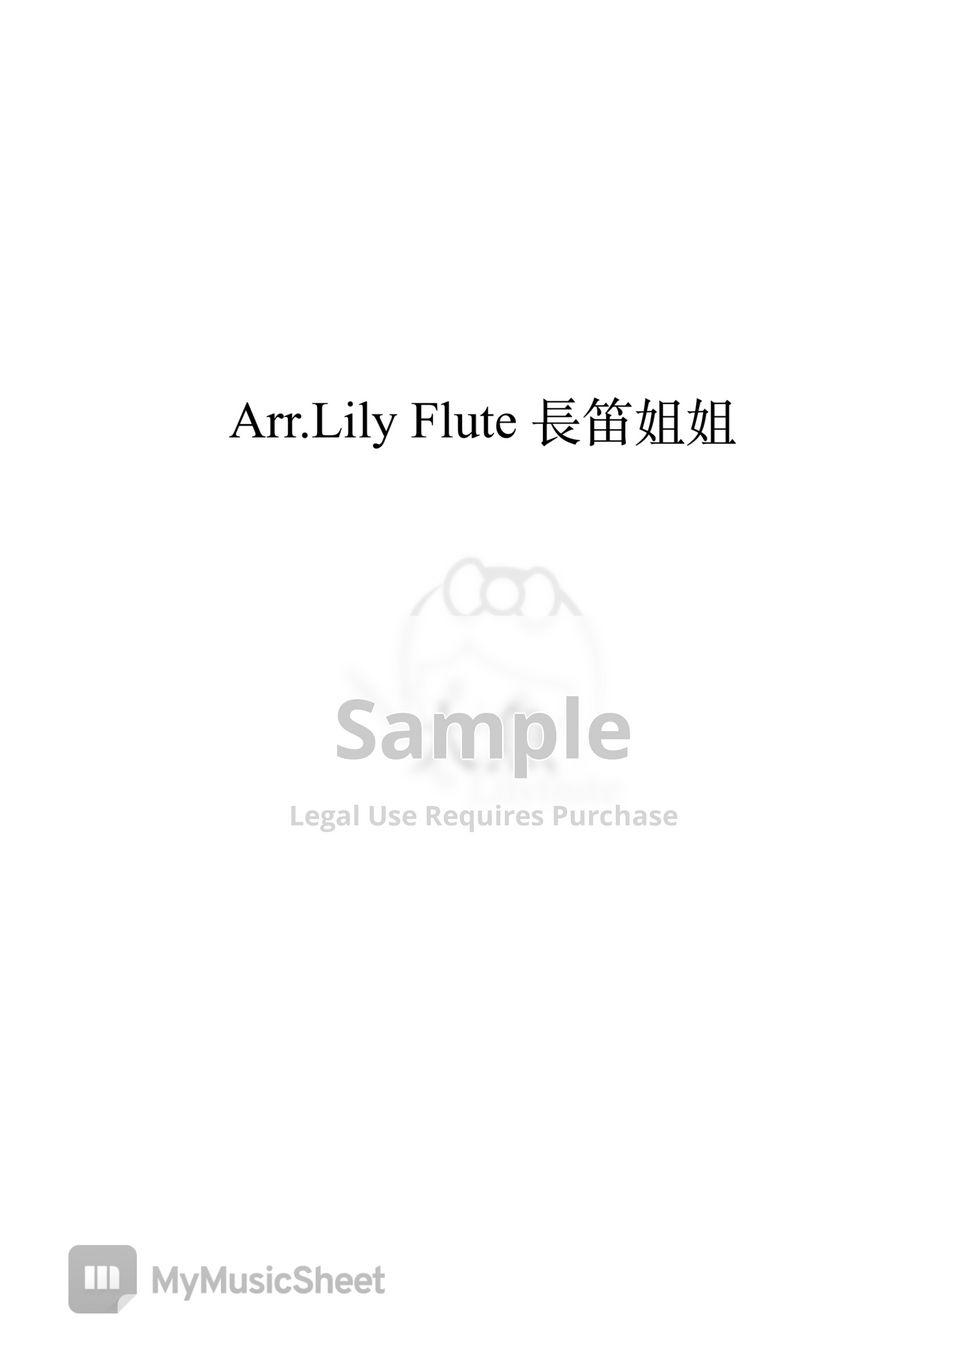 大魚海棠 - 大魚 (可搭配免費伴奏) by Lily Flute 長笛姐姐